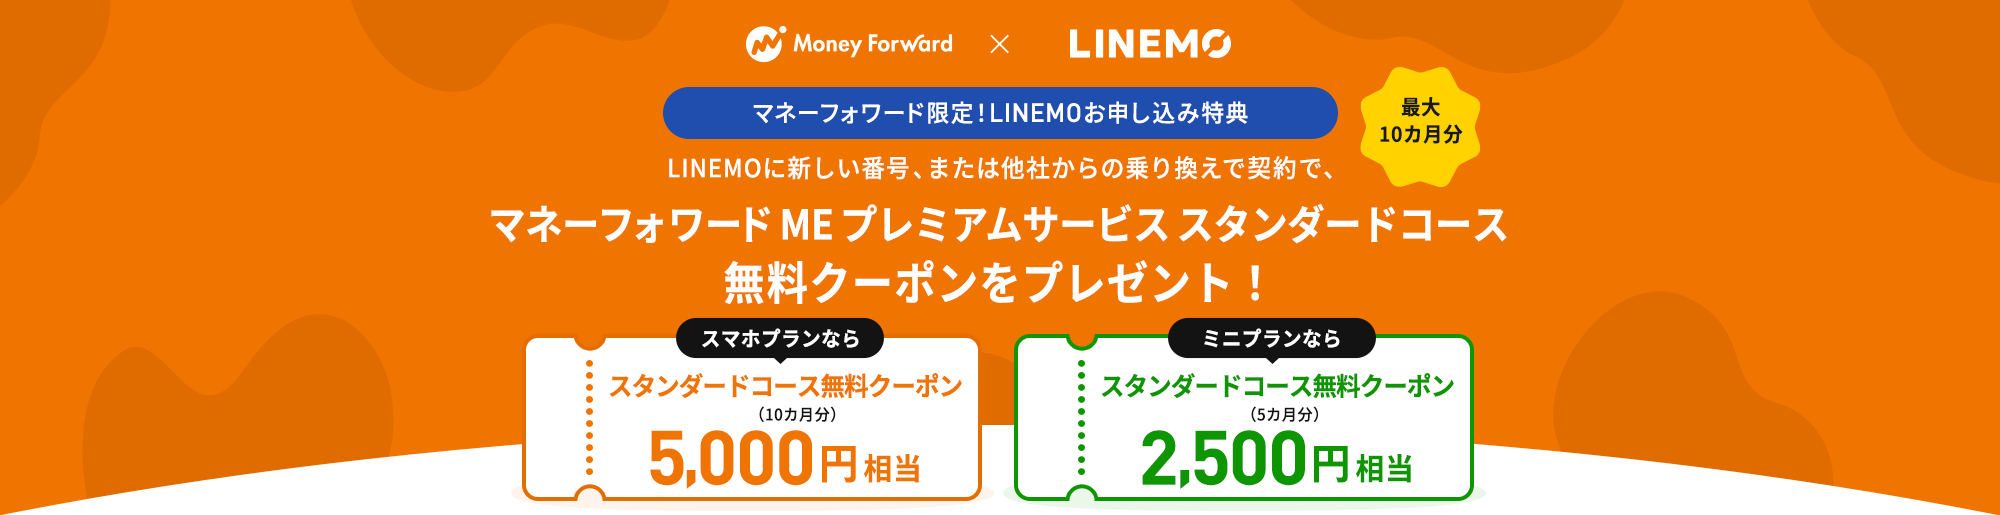 キャンペーン期間中に、LINEモバイル音声通話SIMをご利用の方が、LINEMOに乗り換えで契約で、毎月の基本料を最大13ヶ月間990円割り引きします。